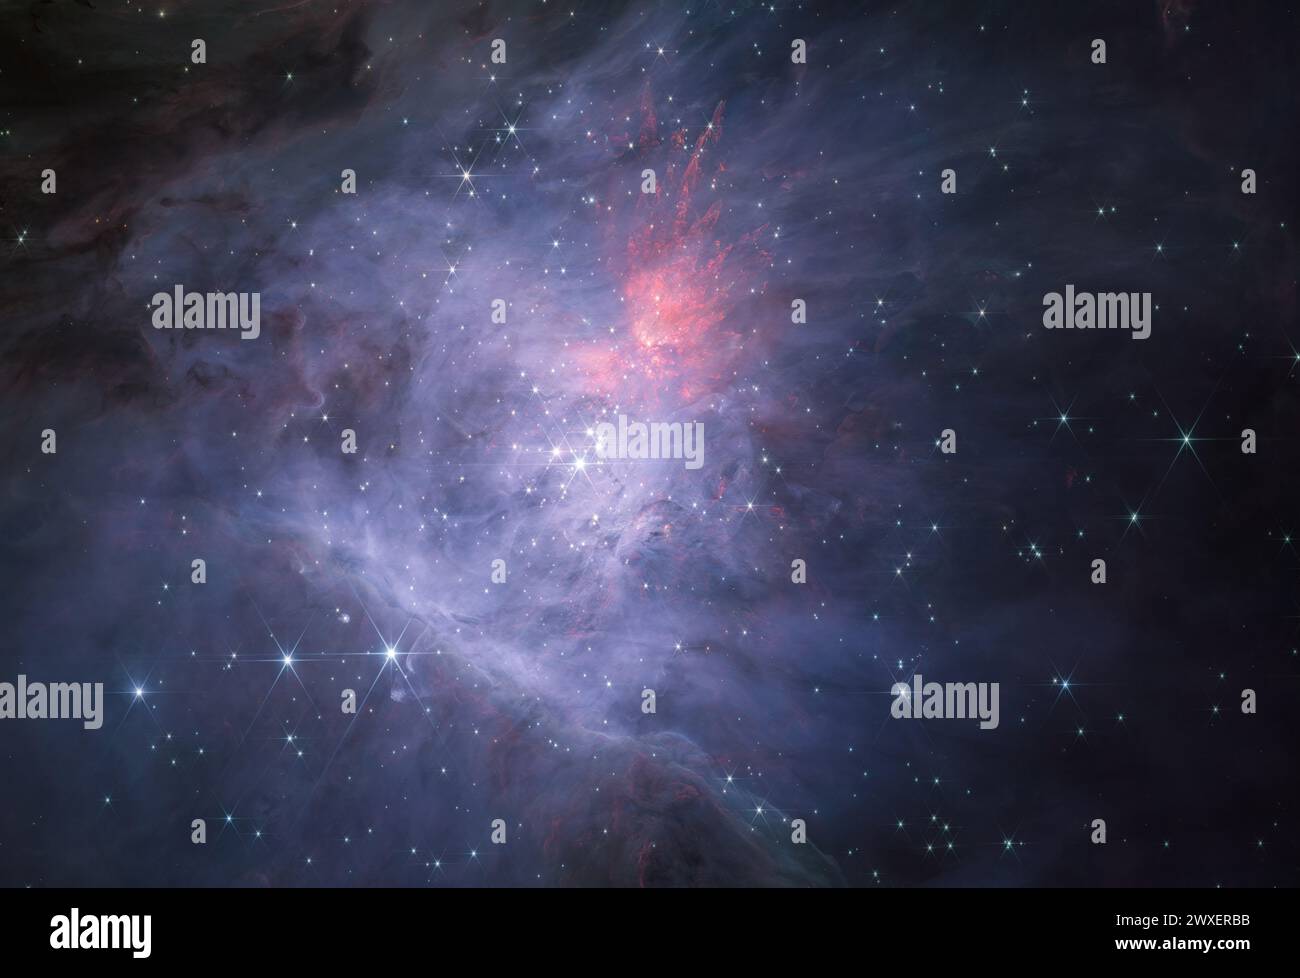 Dieses Bild zeigt die vollständige Vermessung des inneren Orionnebels und des Trapezclusters mit dem NIRCam-Instrument am James Webb-Weltraumteleskop der NASA/ESA/CSA. Dies ist der kurzwellige Farbverbund, der den Nebel, seine Sterne und viele andere Objekte in beispielloser Detailtreue im Infrarot offenbart. " Credit: NASA, ESA, CSA / Science Leads and Image Processing: M. McCaughrean, S. Pearson Stockfoto